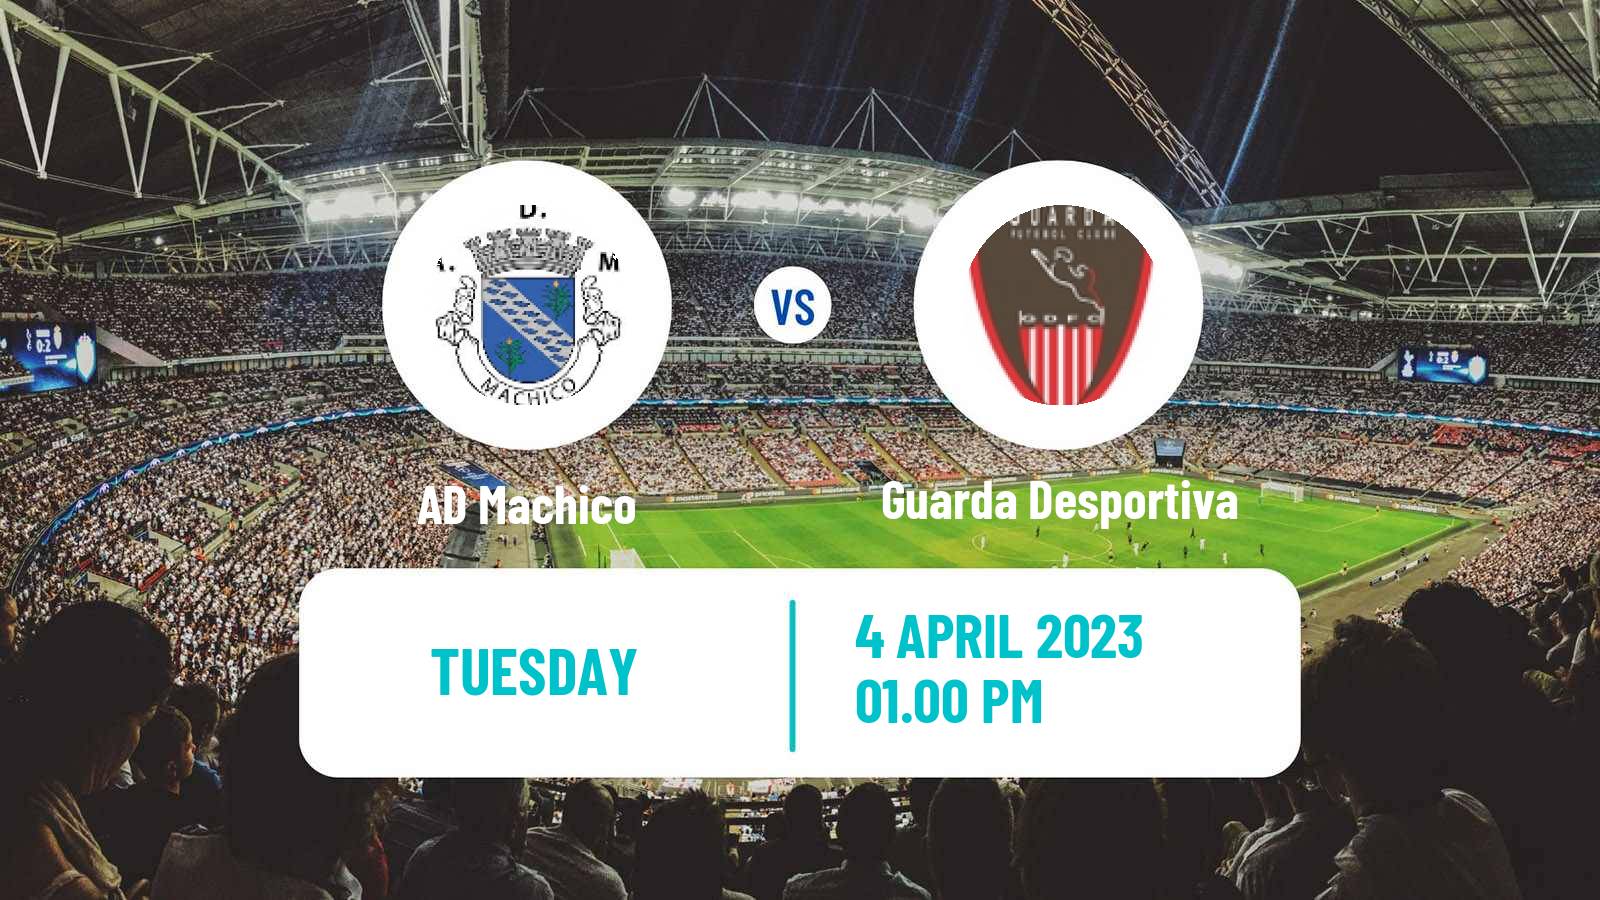 Soccer Campeonato de Portugal Machico - Guarda Desportiva